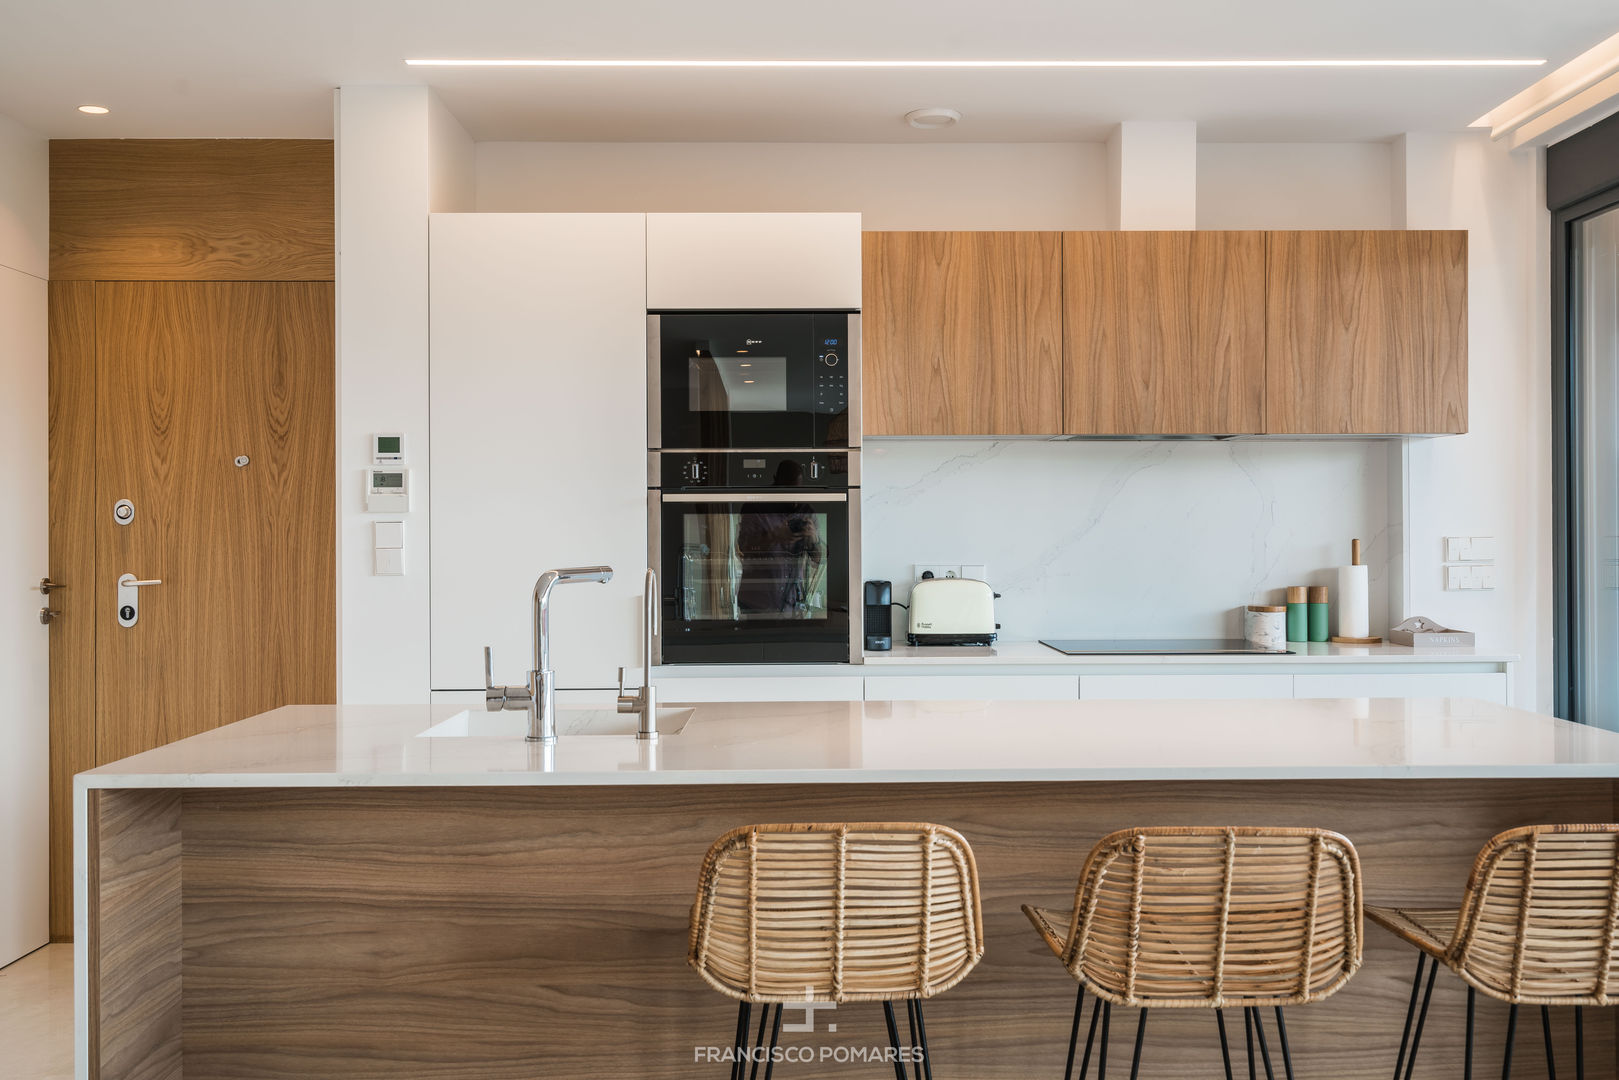 Interiorismo de estilo mediterráneo y diseño de cocina en apartamento (casa en la playa), ARREL arquitectura ARREL arquitectura Built-in kitchens Wood Wood effect